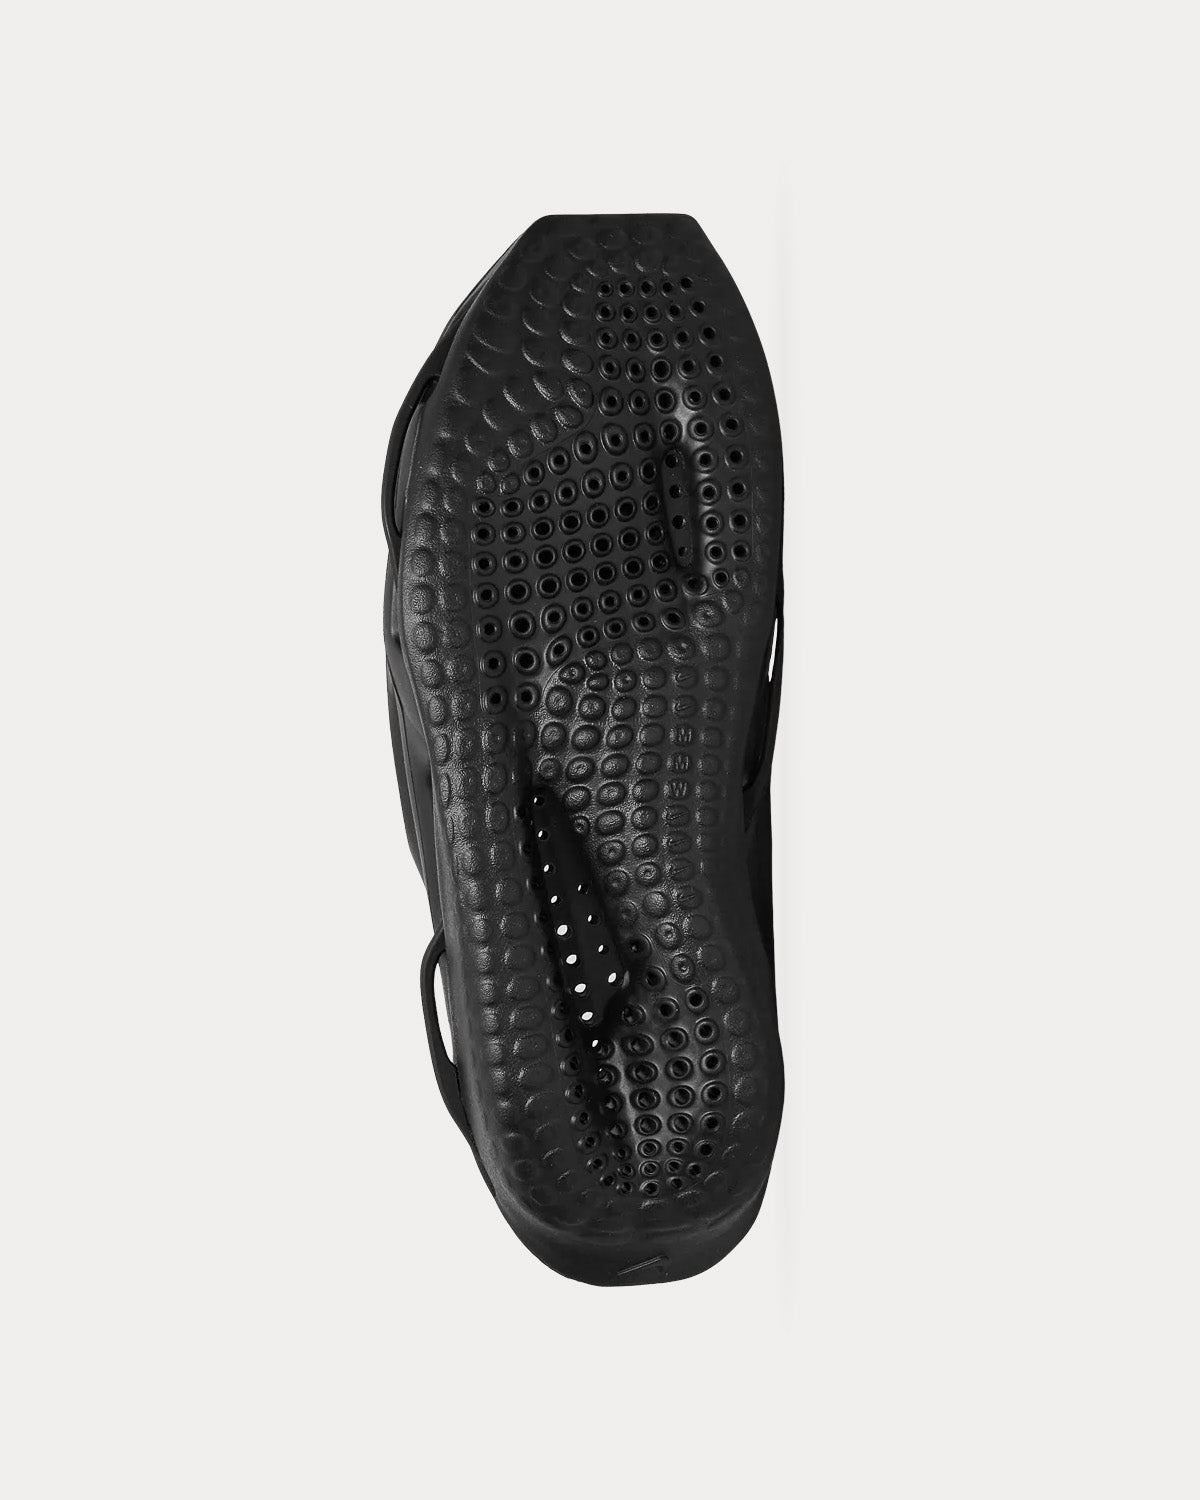 1017 ALYX 9SM - MMW Nike 005 Black Slides